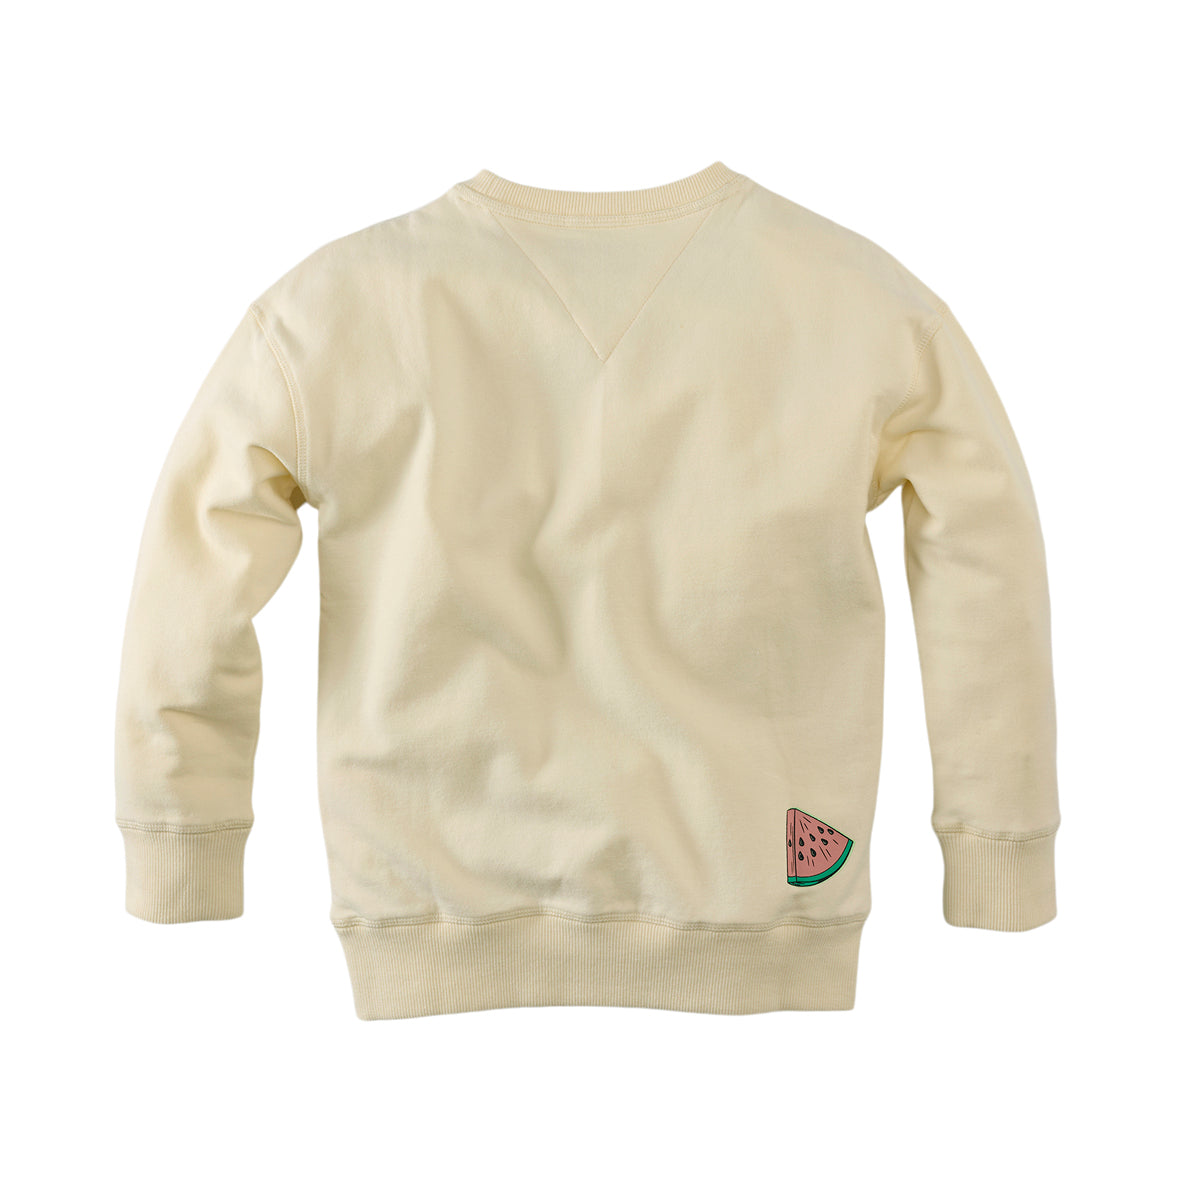 Jongens Sweater Otello van Z8 in de kleur Cloud cream in maat 140-146.